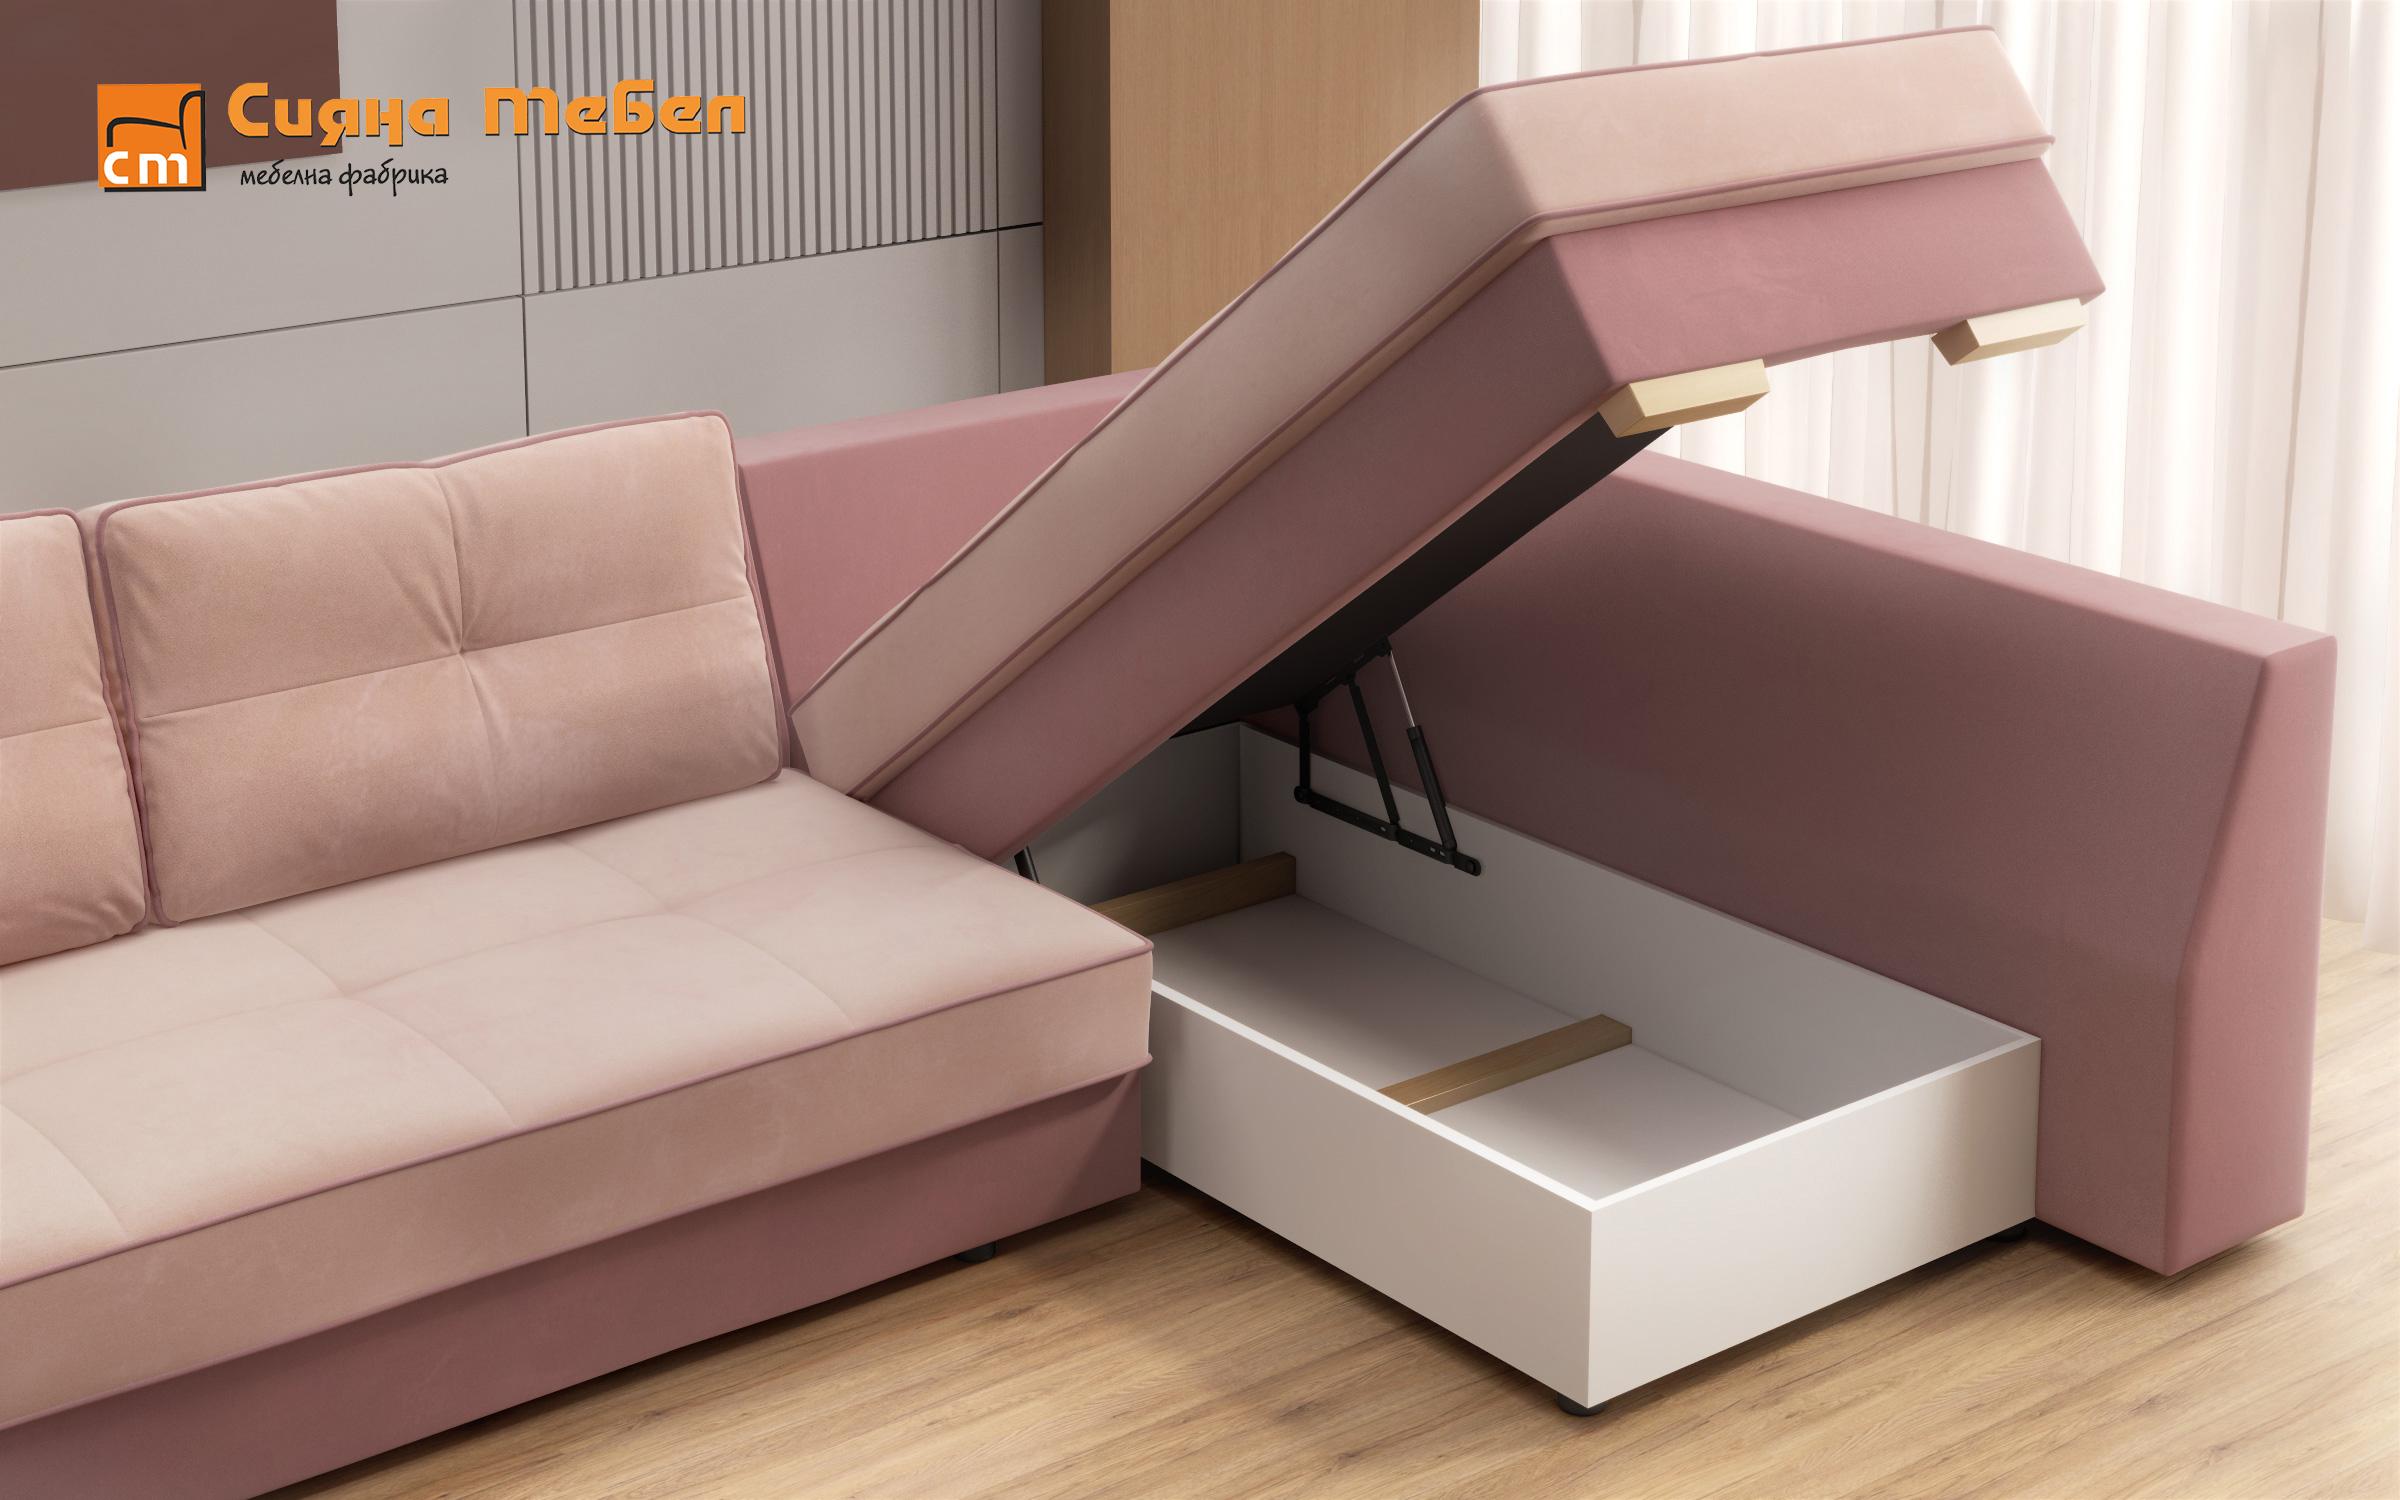 Γωνιακός καναπές Next, ροζ + ανοιχτό ροζ  9